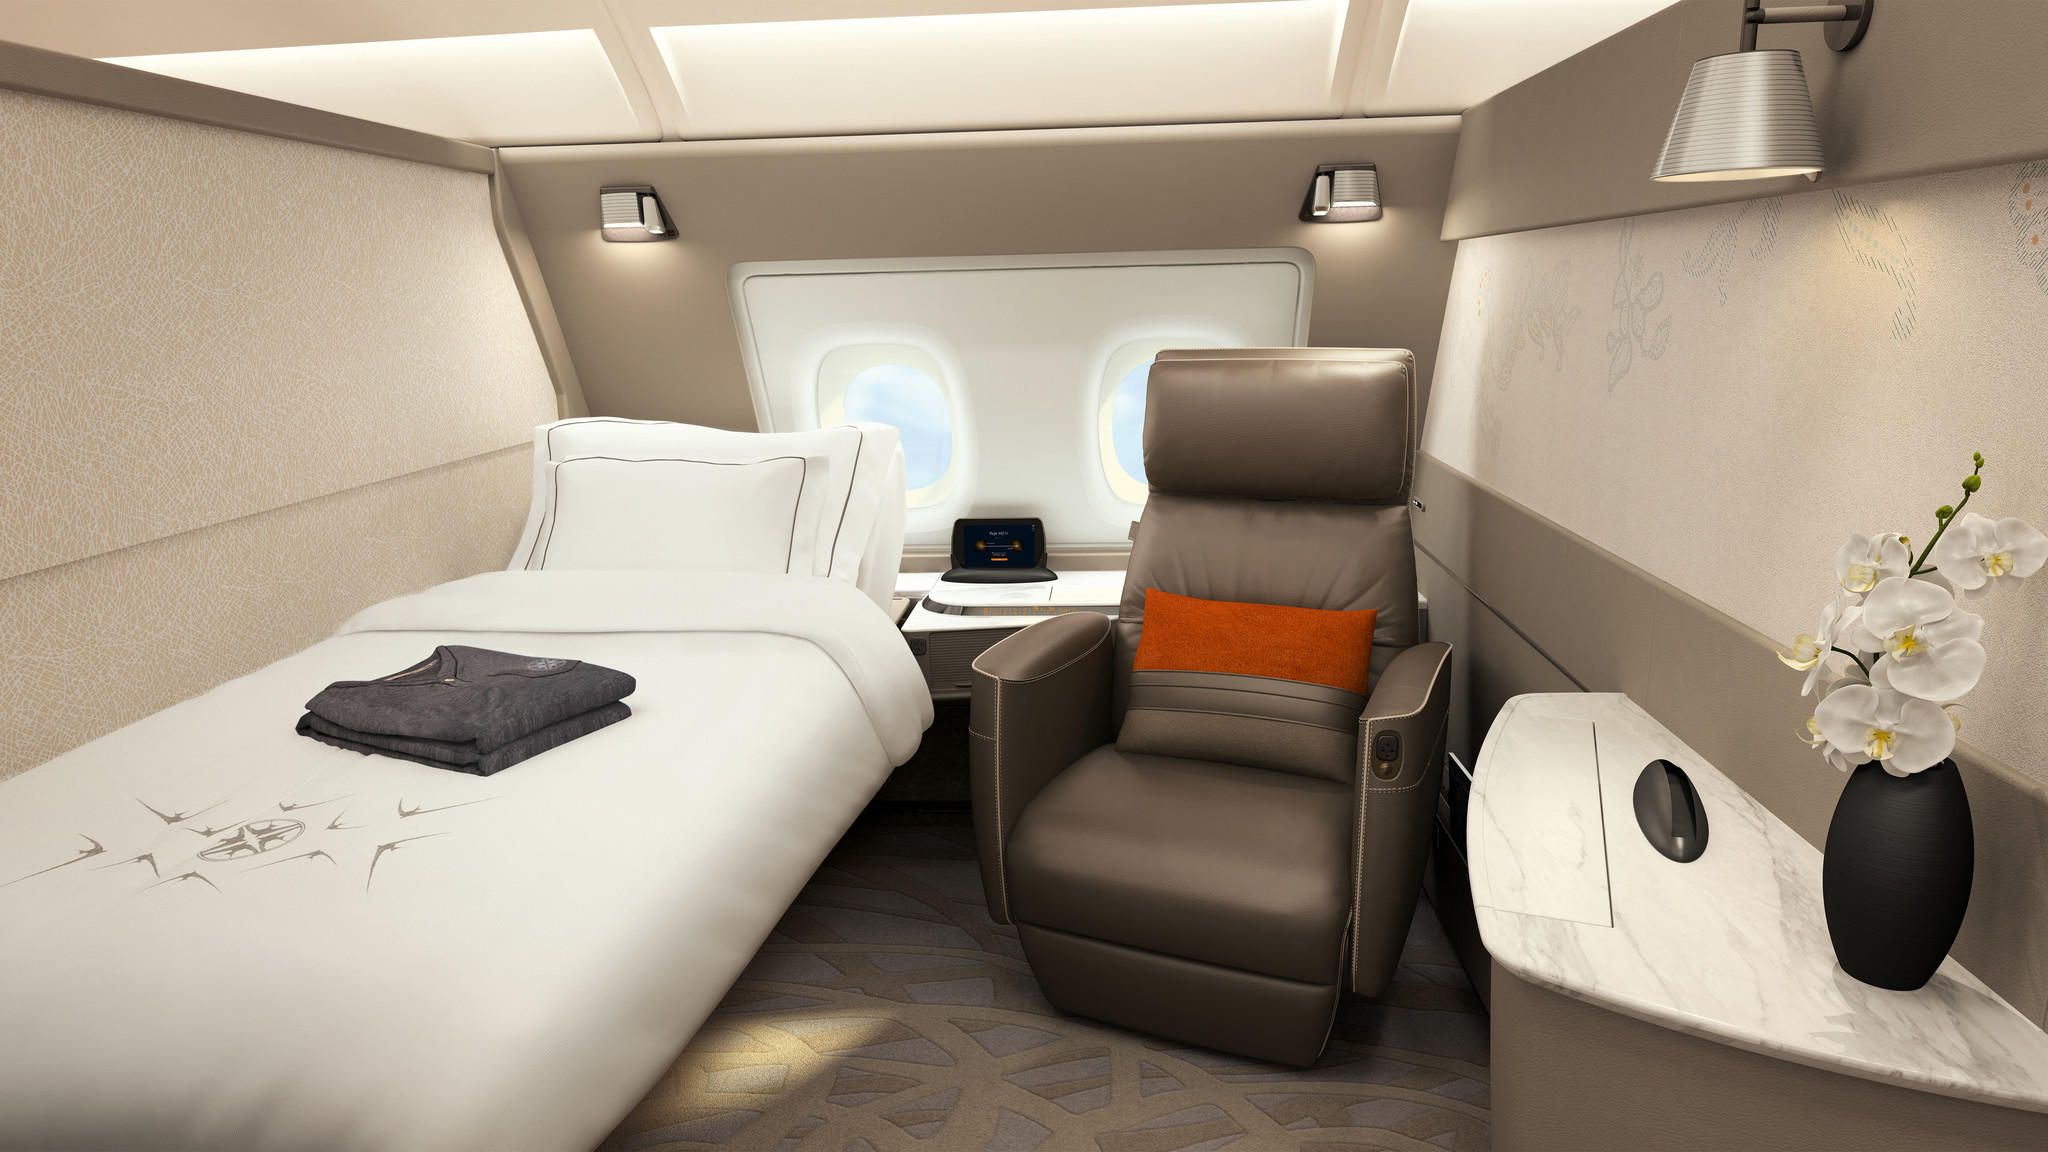 3 chiếc giường đắt đỏ hơn chiếc vé hạng nhất, cung cấp không gian thoải mái nhất trên bầu trời với giá tới hàng tỷ đồng/chuyến đi - Ảnh 9.